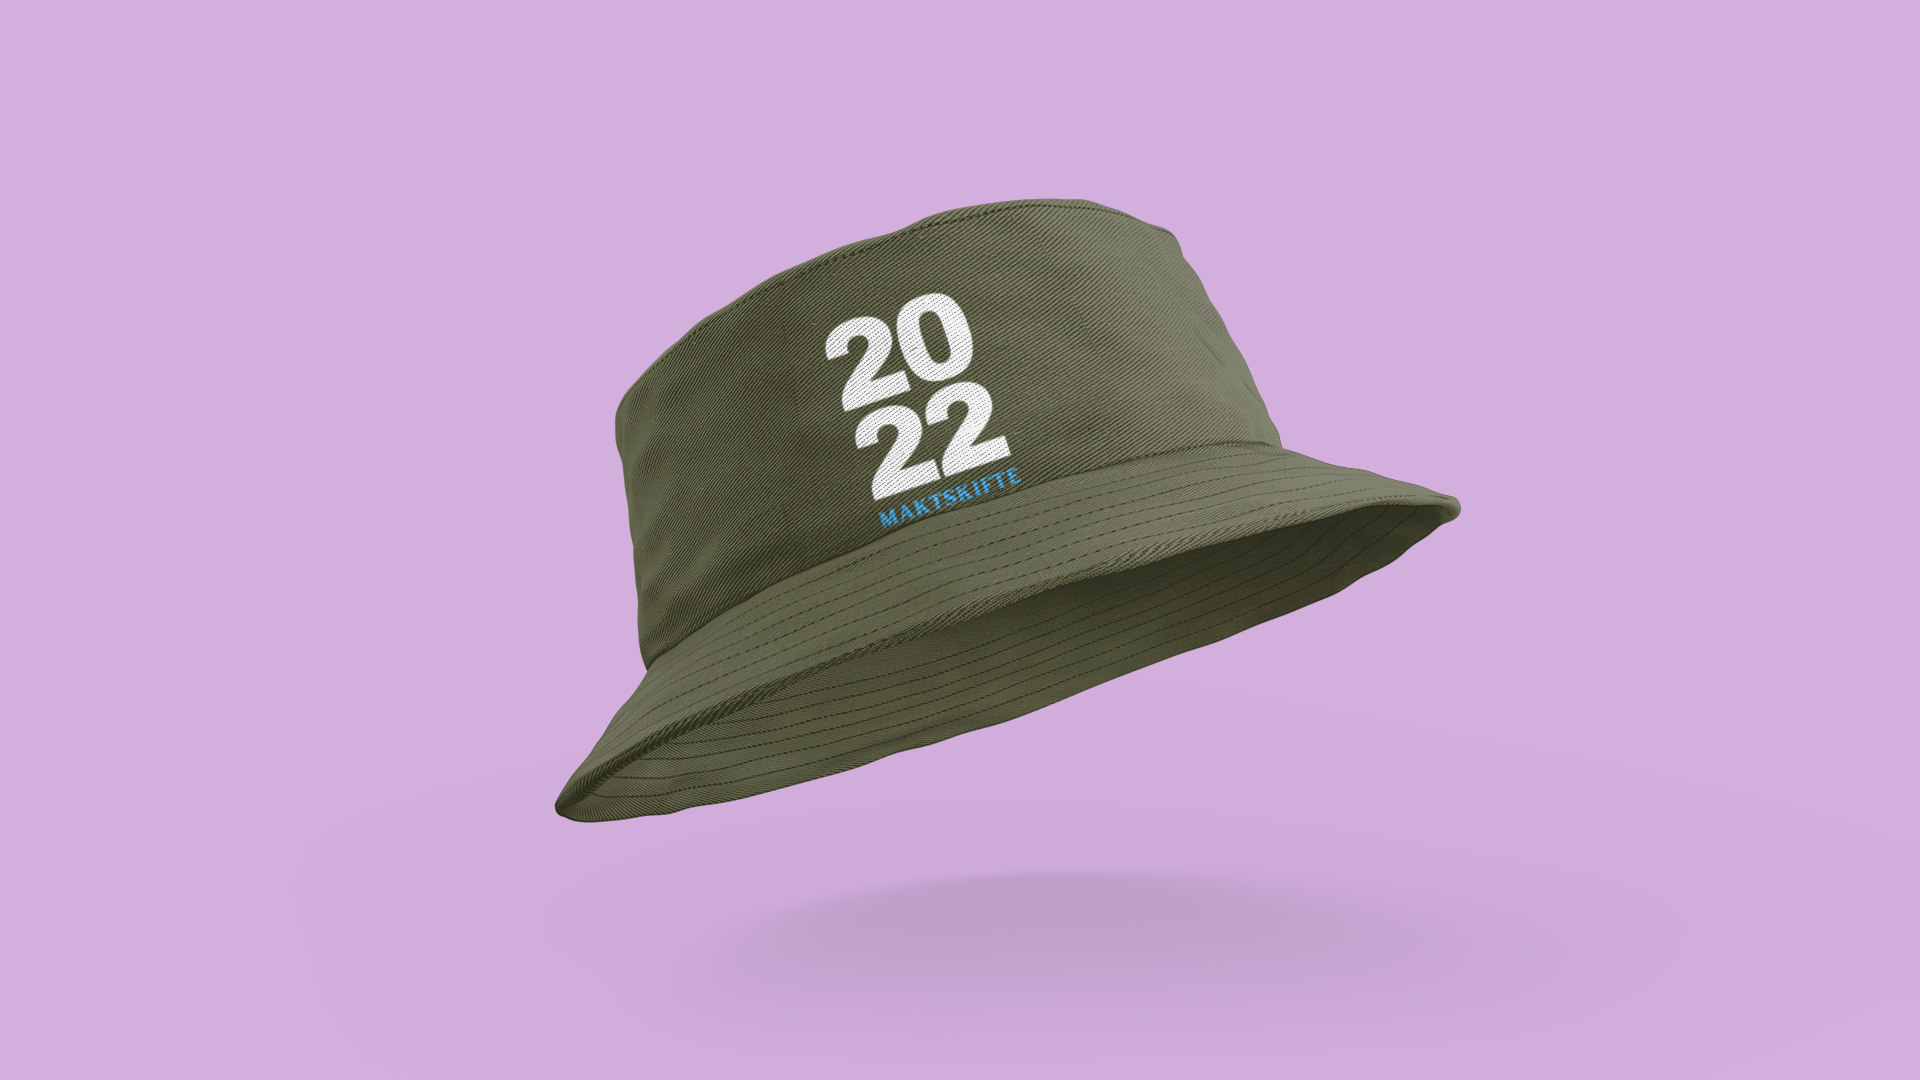 2022 Maktskifte Bucket Hat